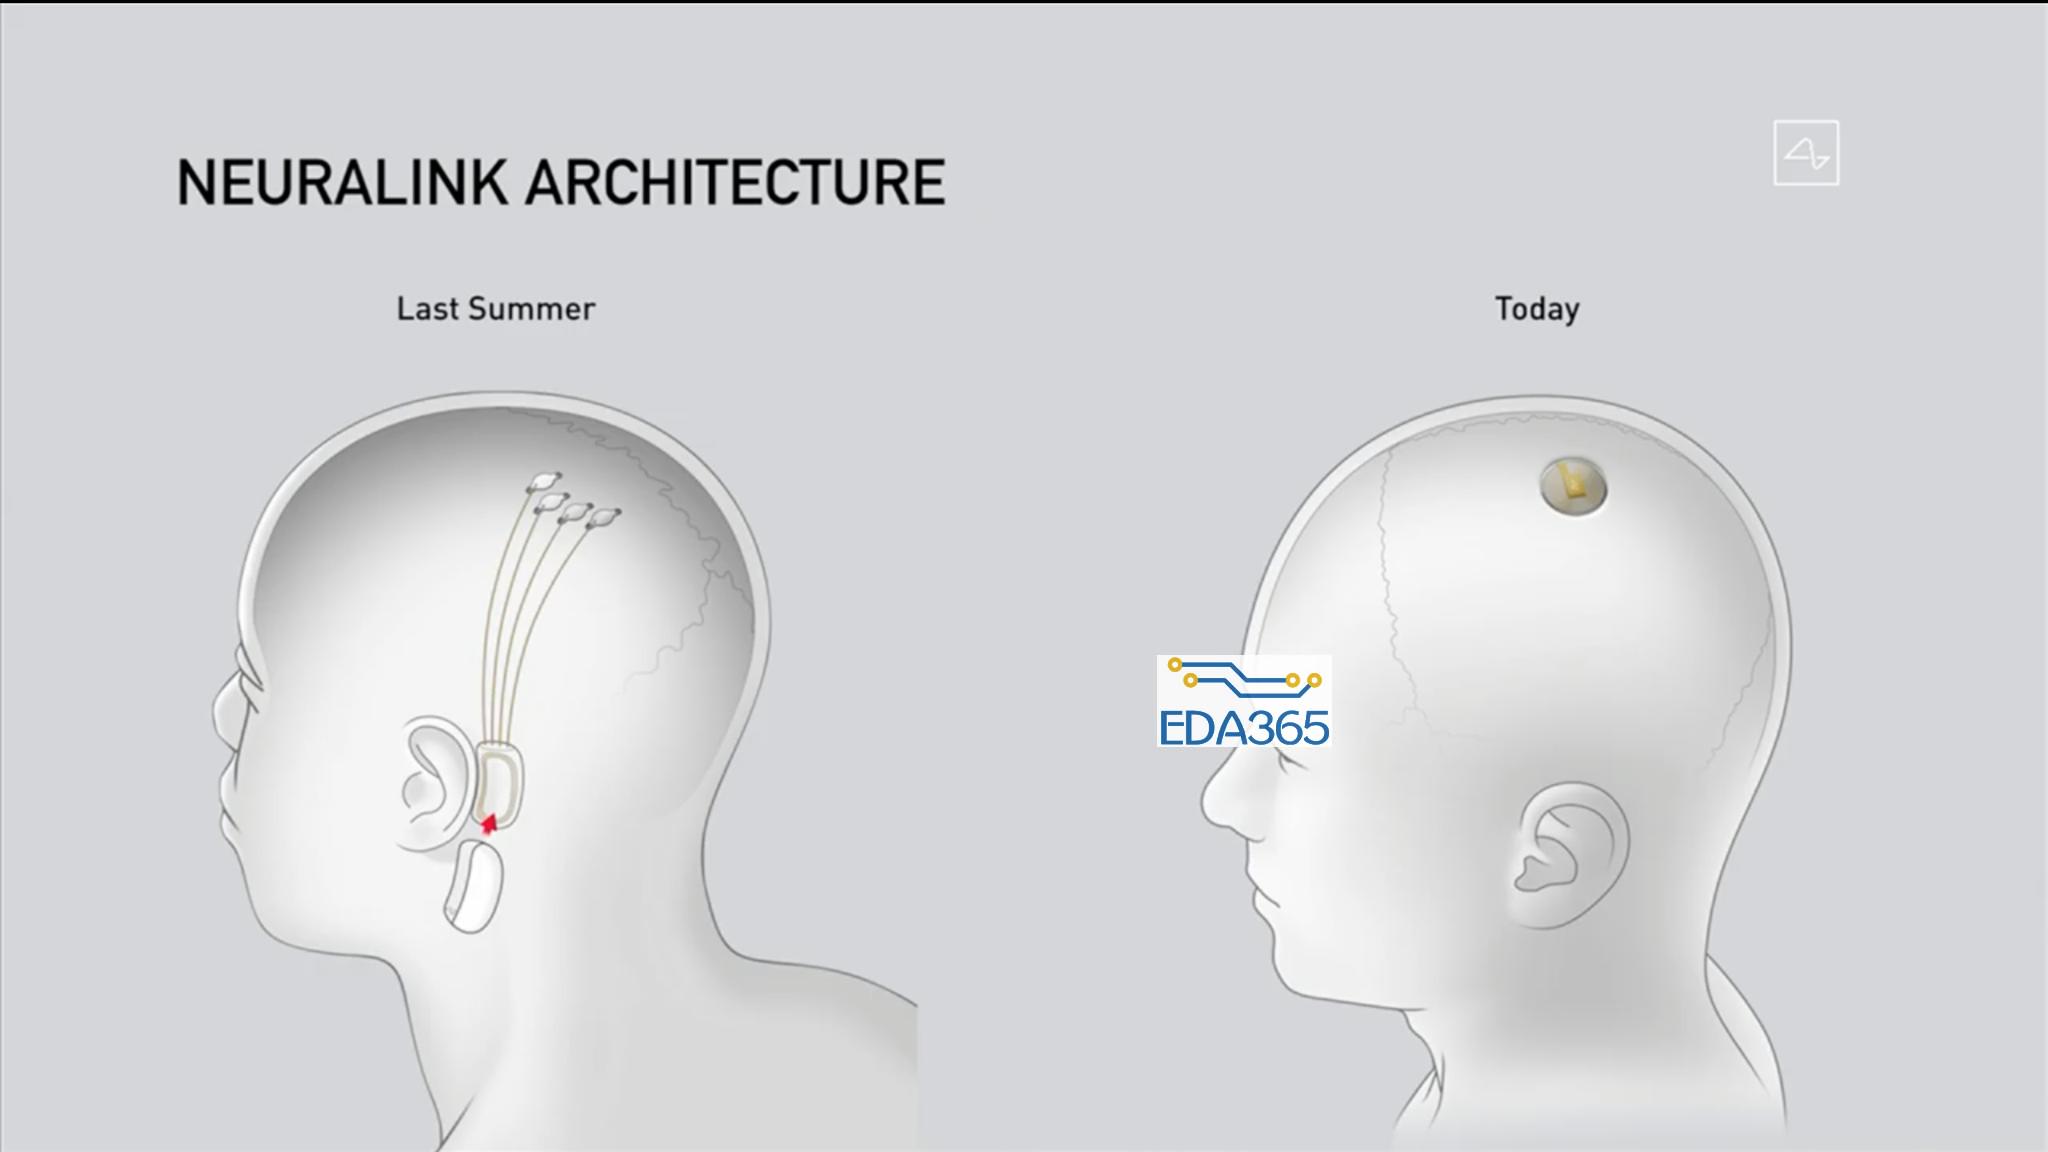  2019年展示的设备位于耳后（左），右侧为最新设备